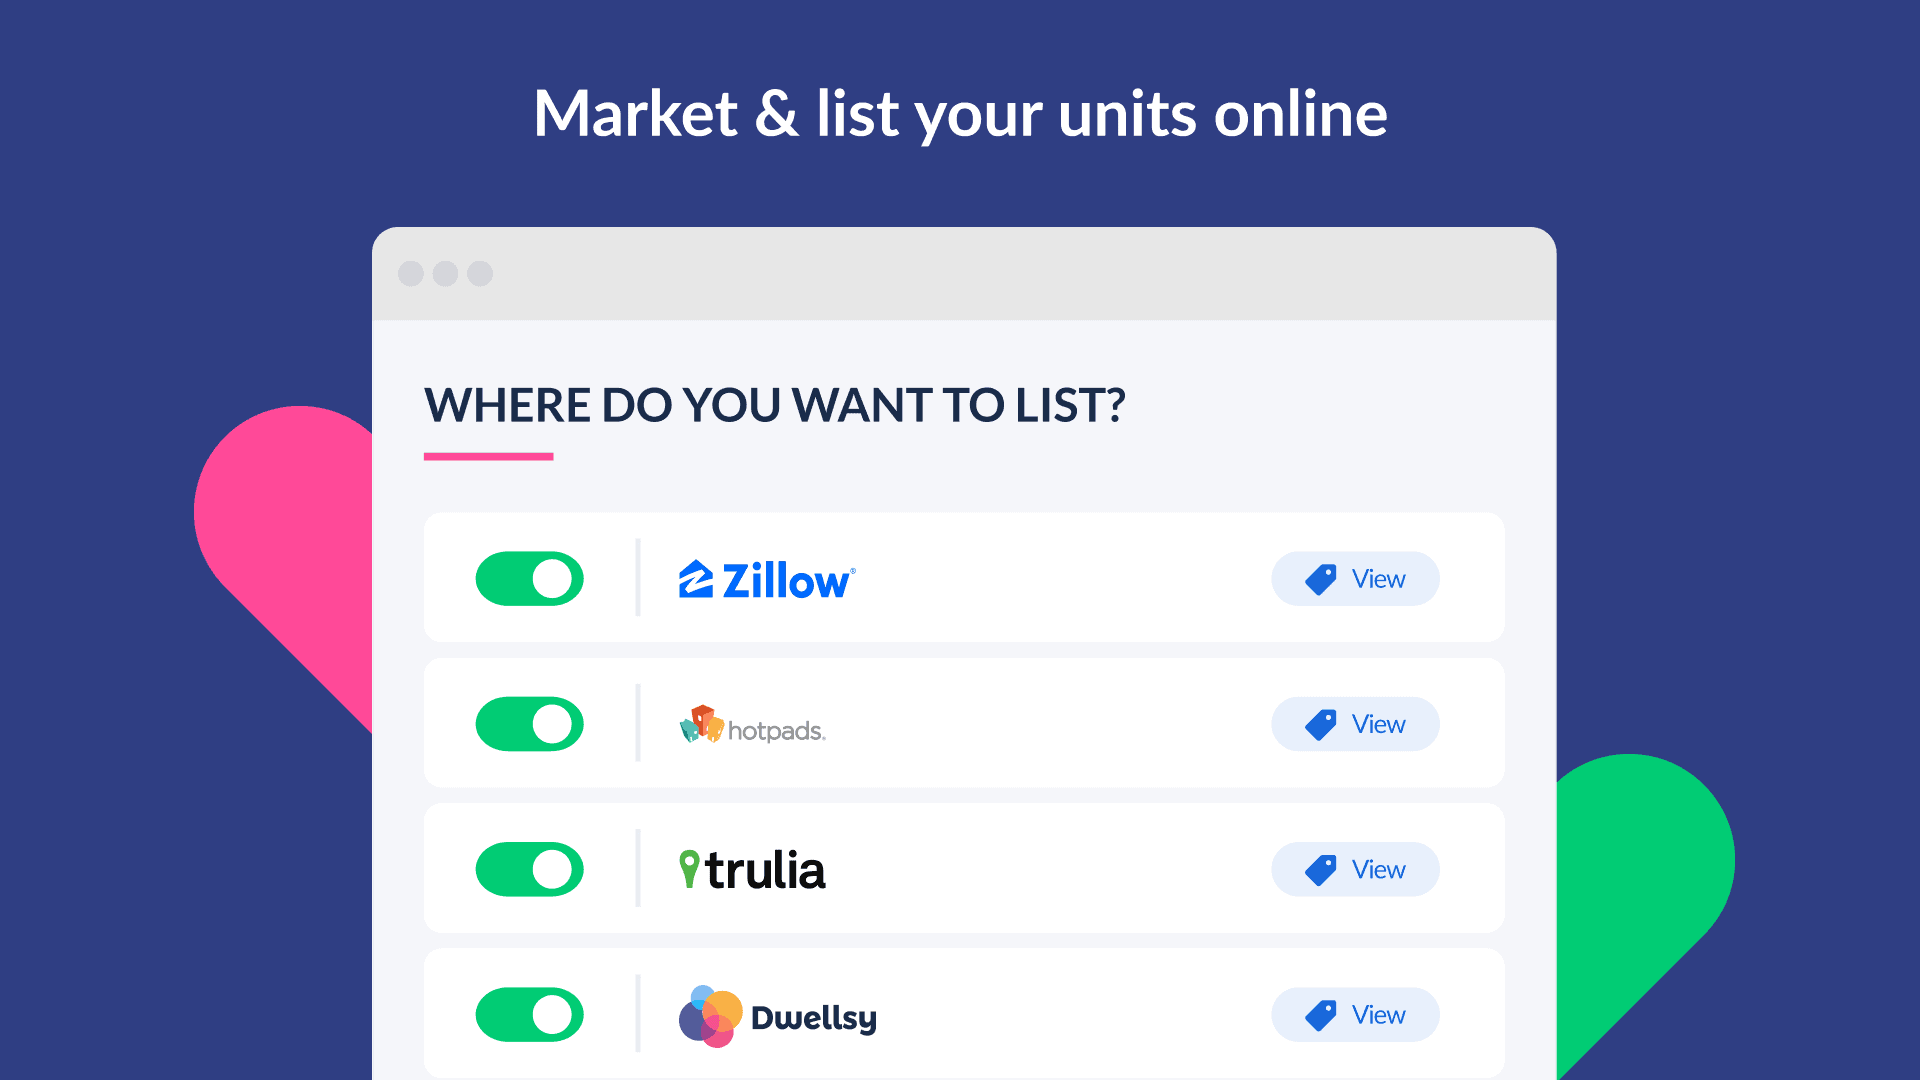 Market your units